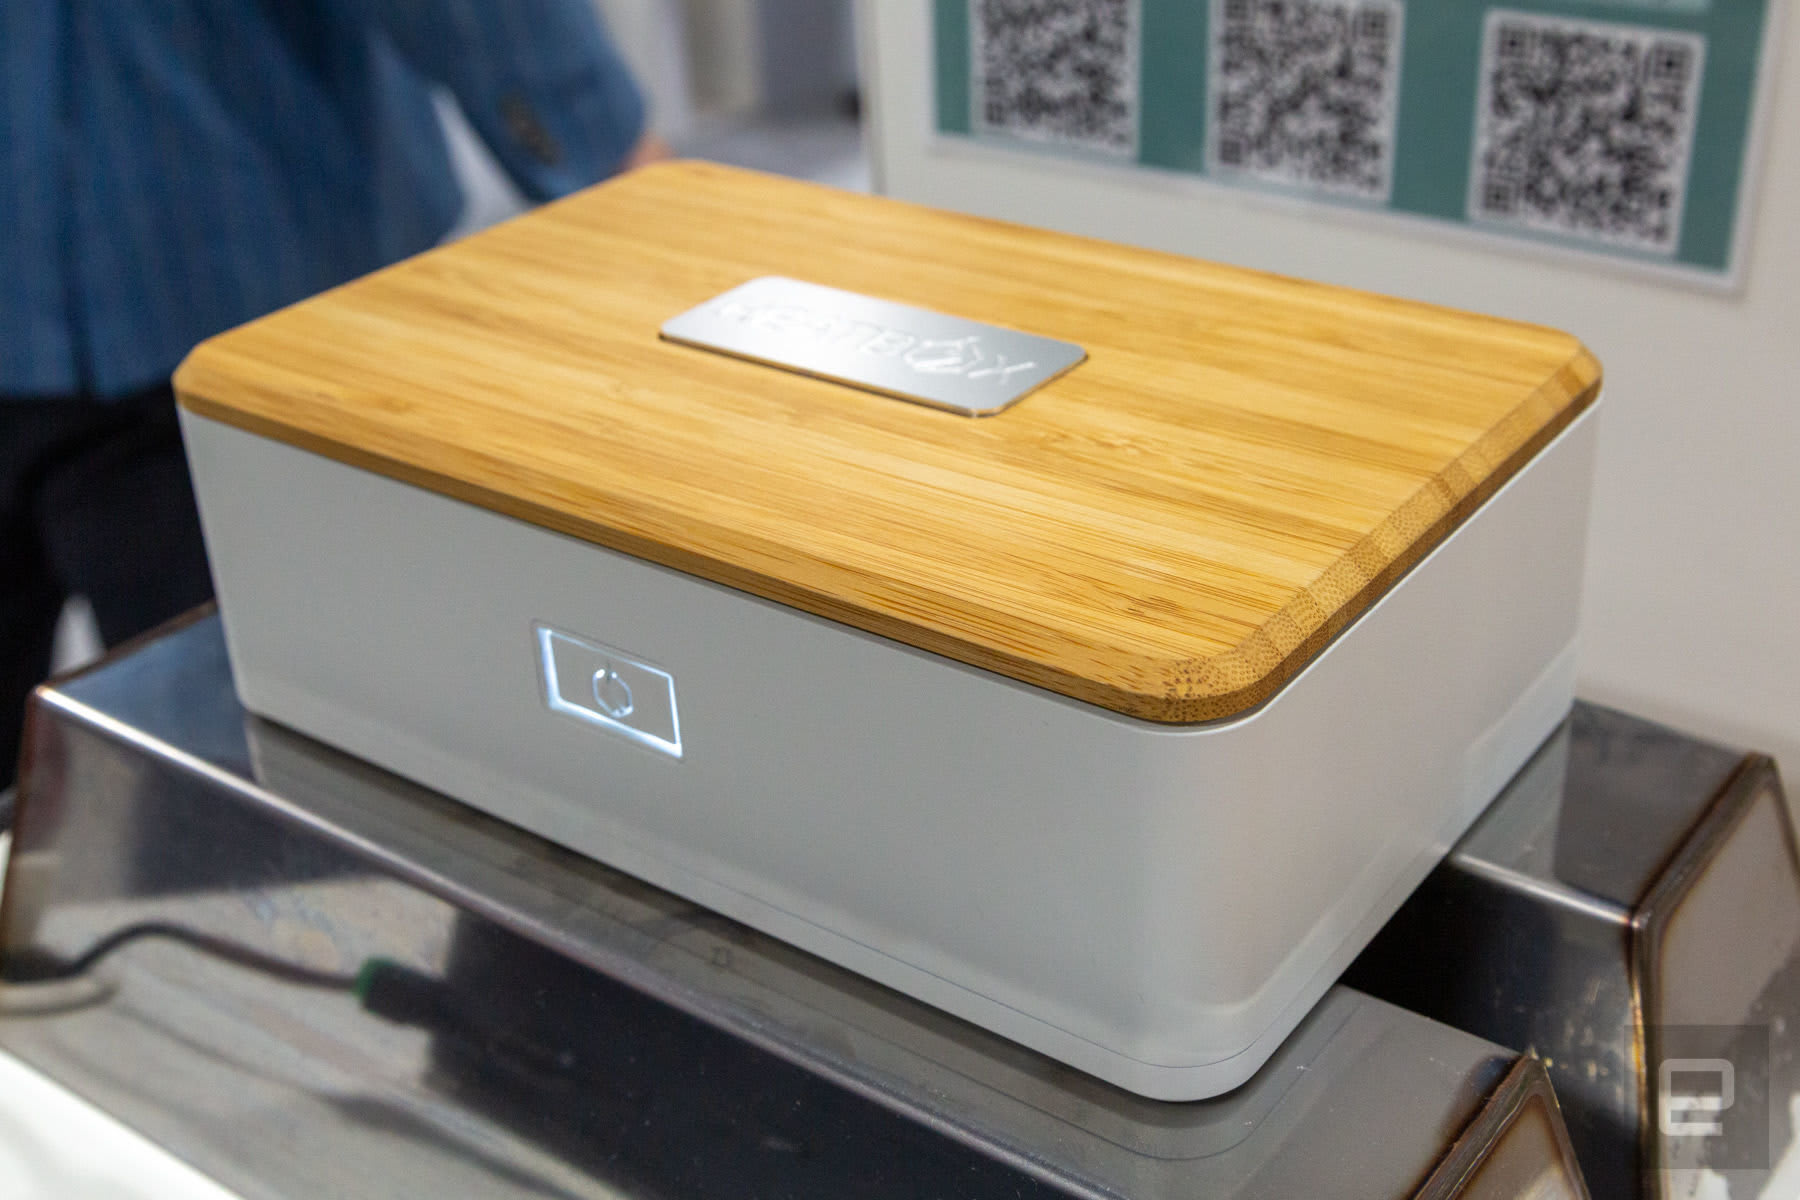 蒸気でお弁当を温める充電式弁当箱 Heatbox がプロトタイプを公開 Engadget 日本版